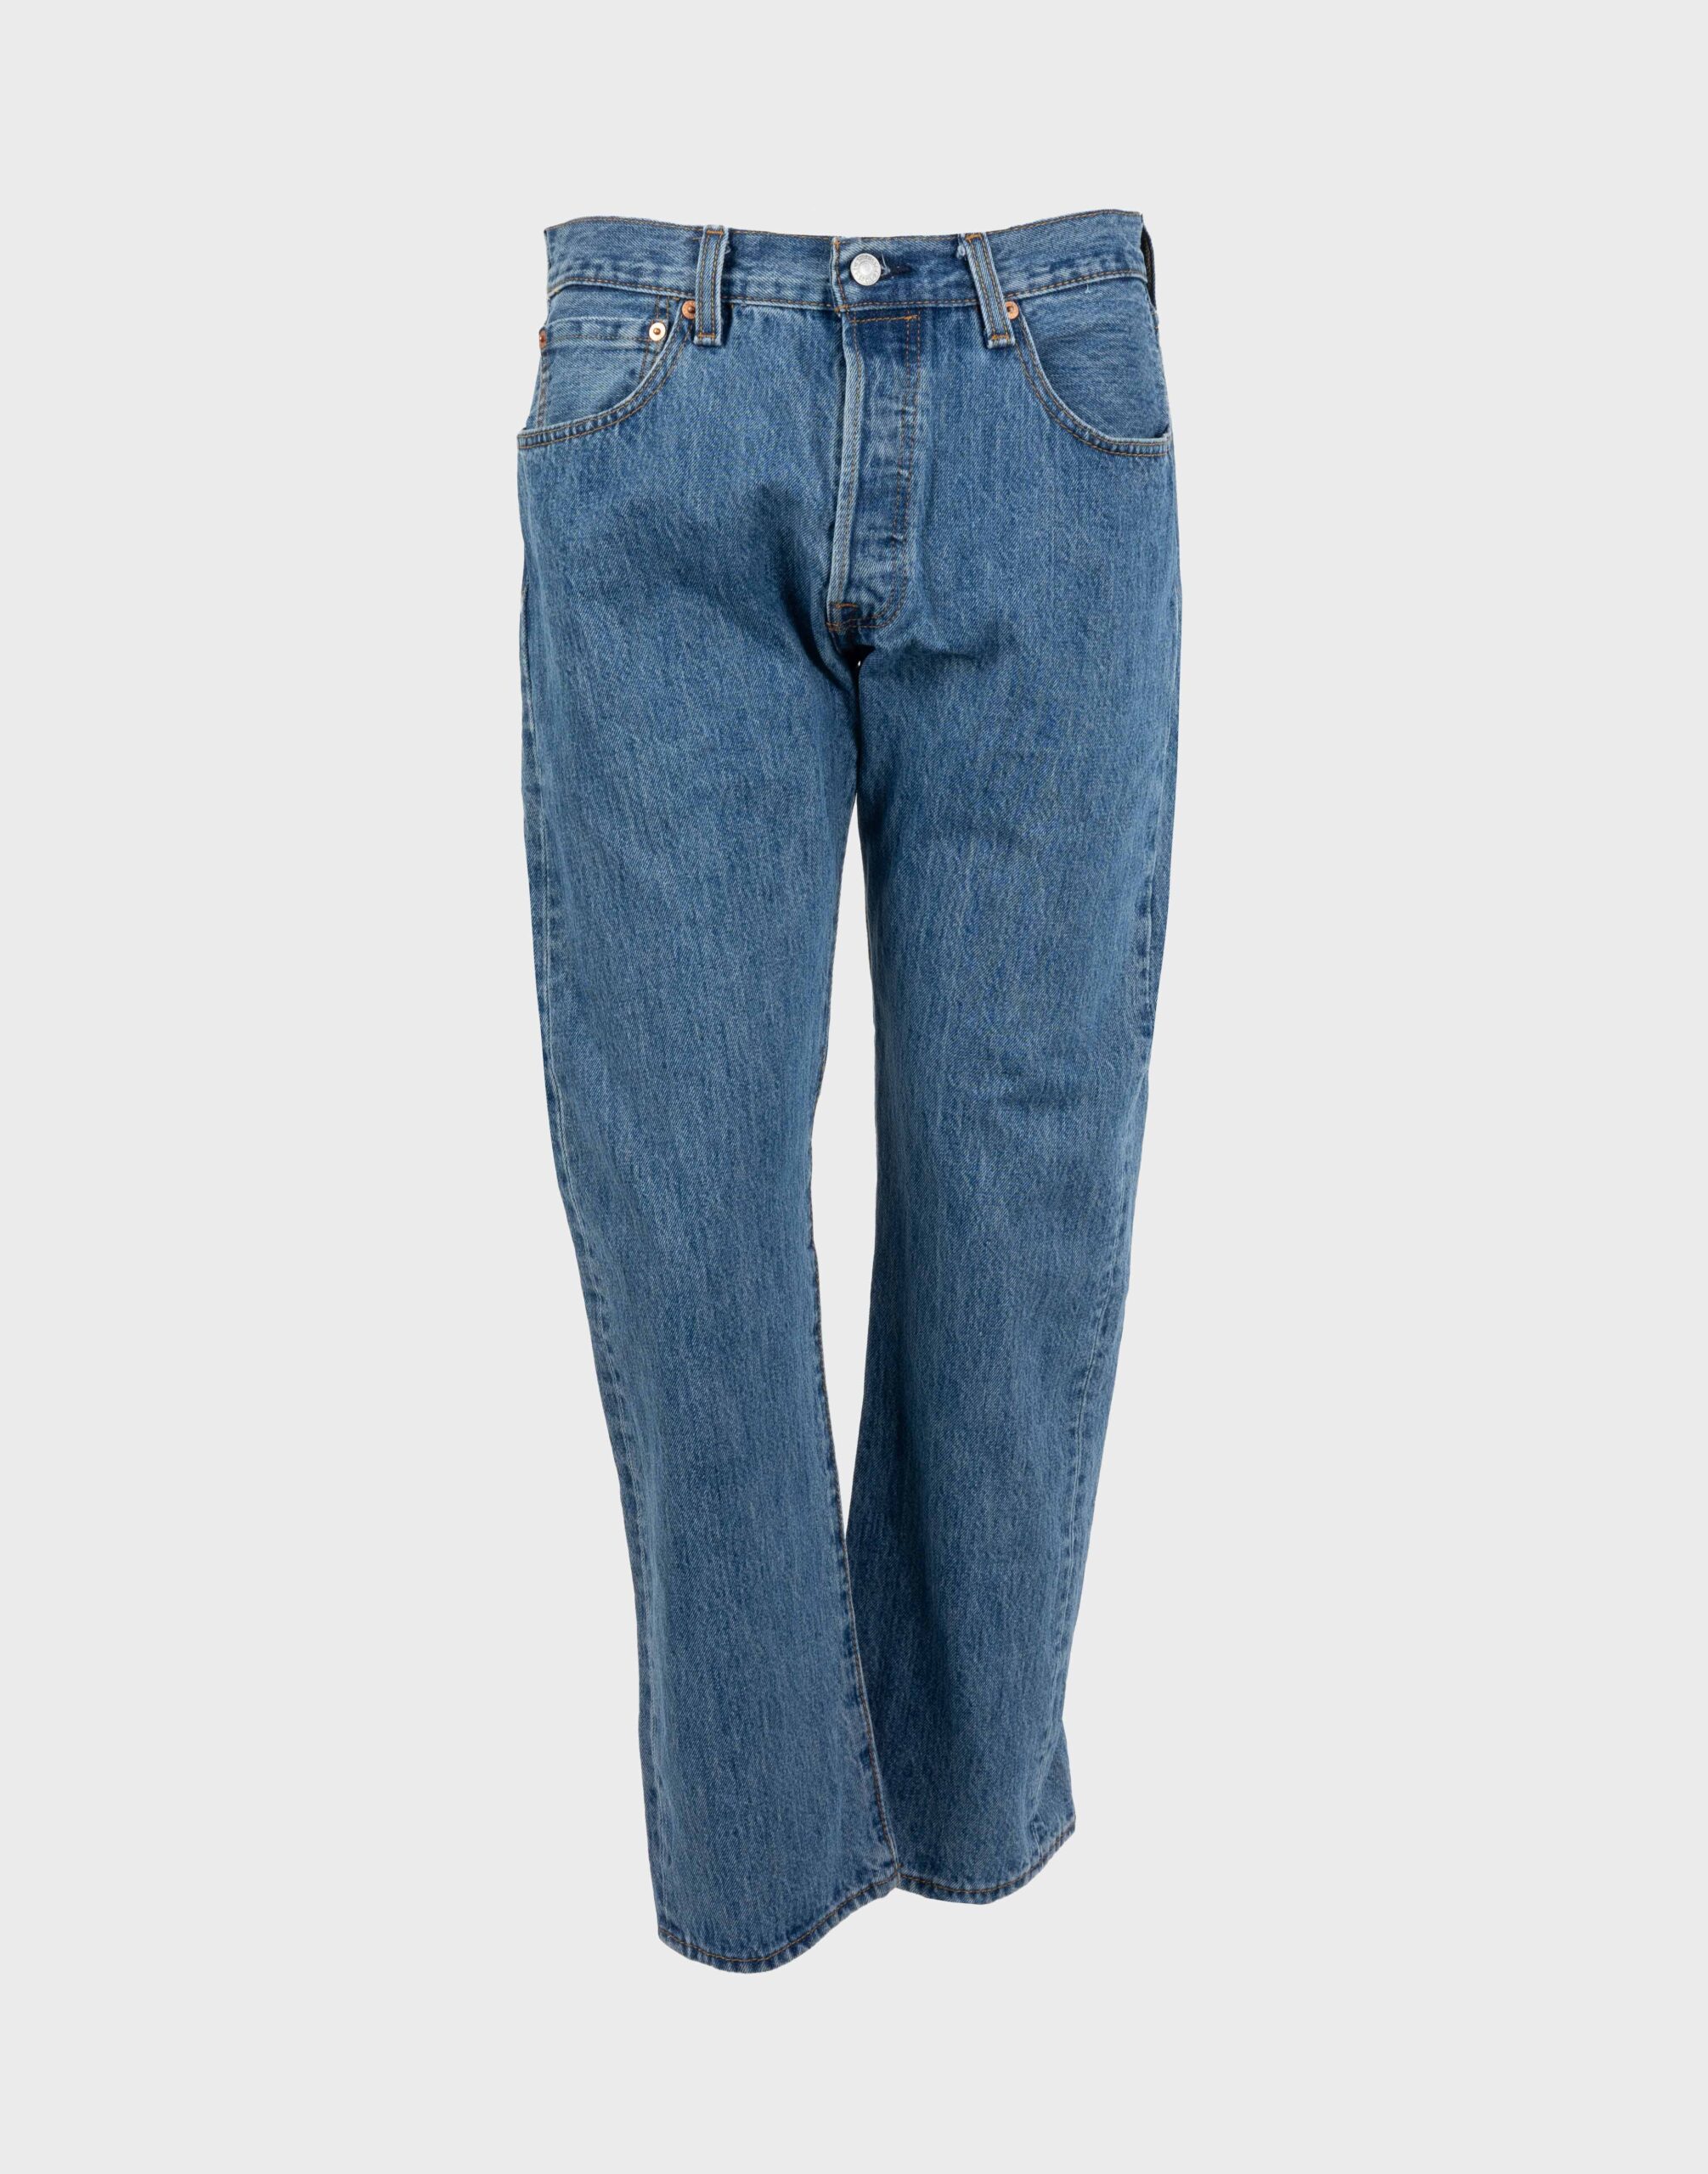 pantaloni levis jeans da uomo lavaggio medio modello 501